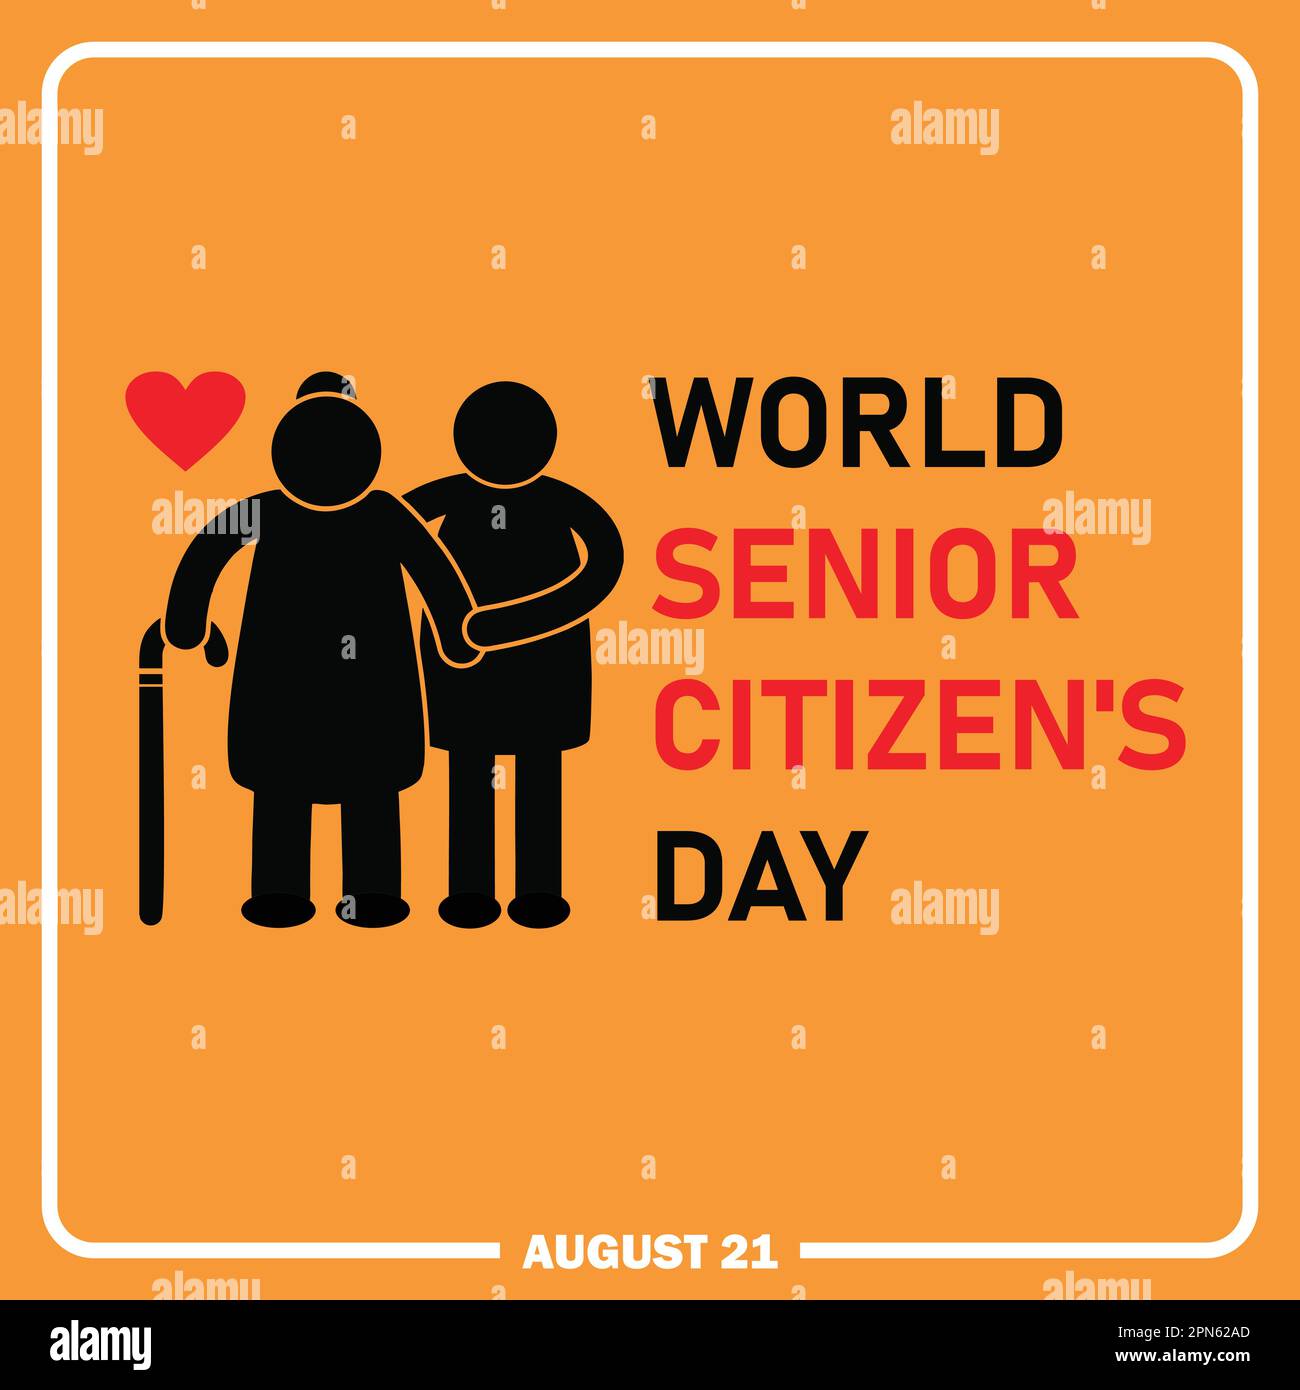 World Senior Citizen's Day banner, happy elderly day, modern background